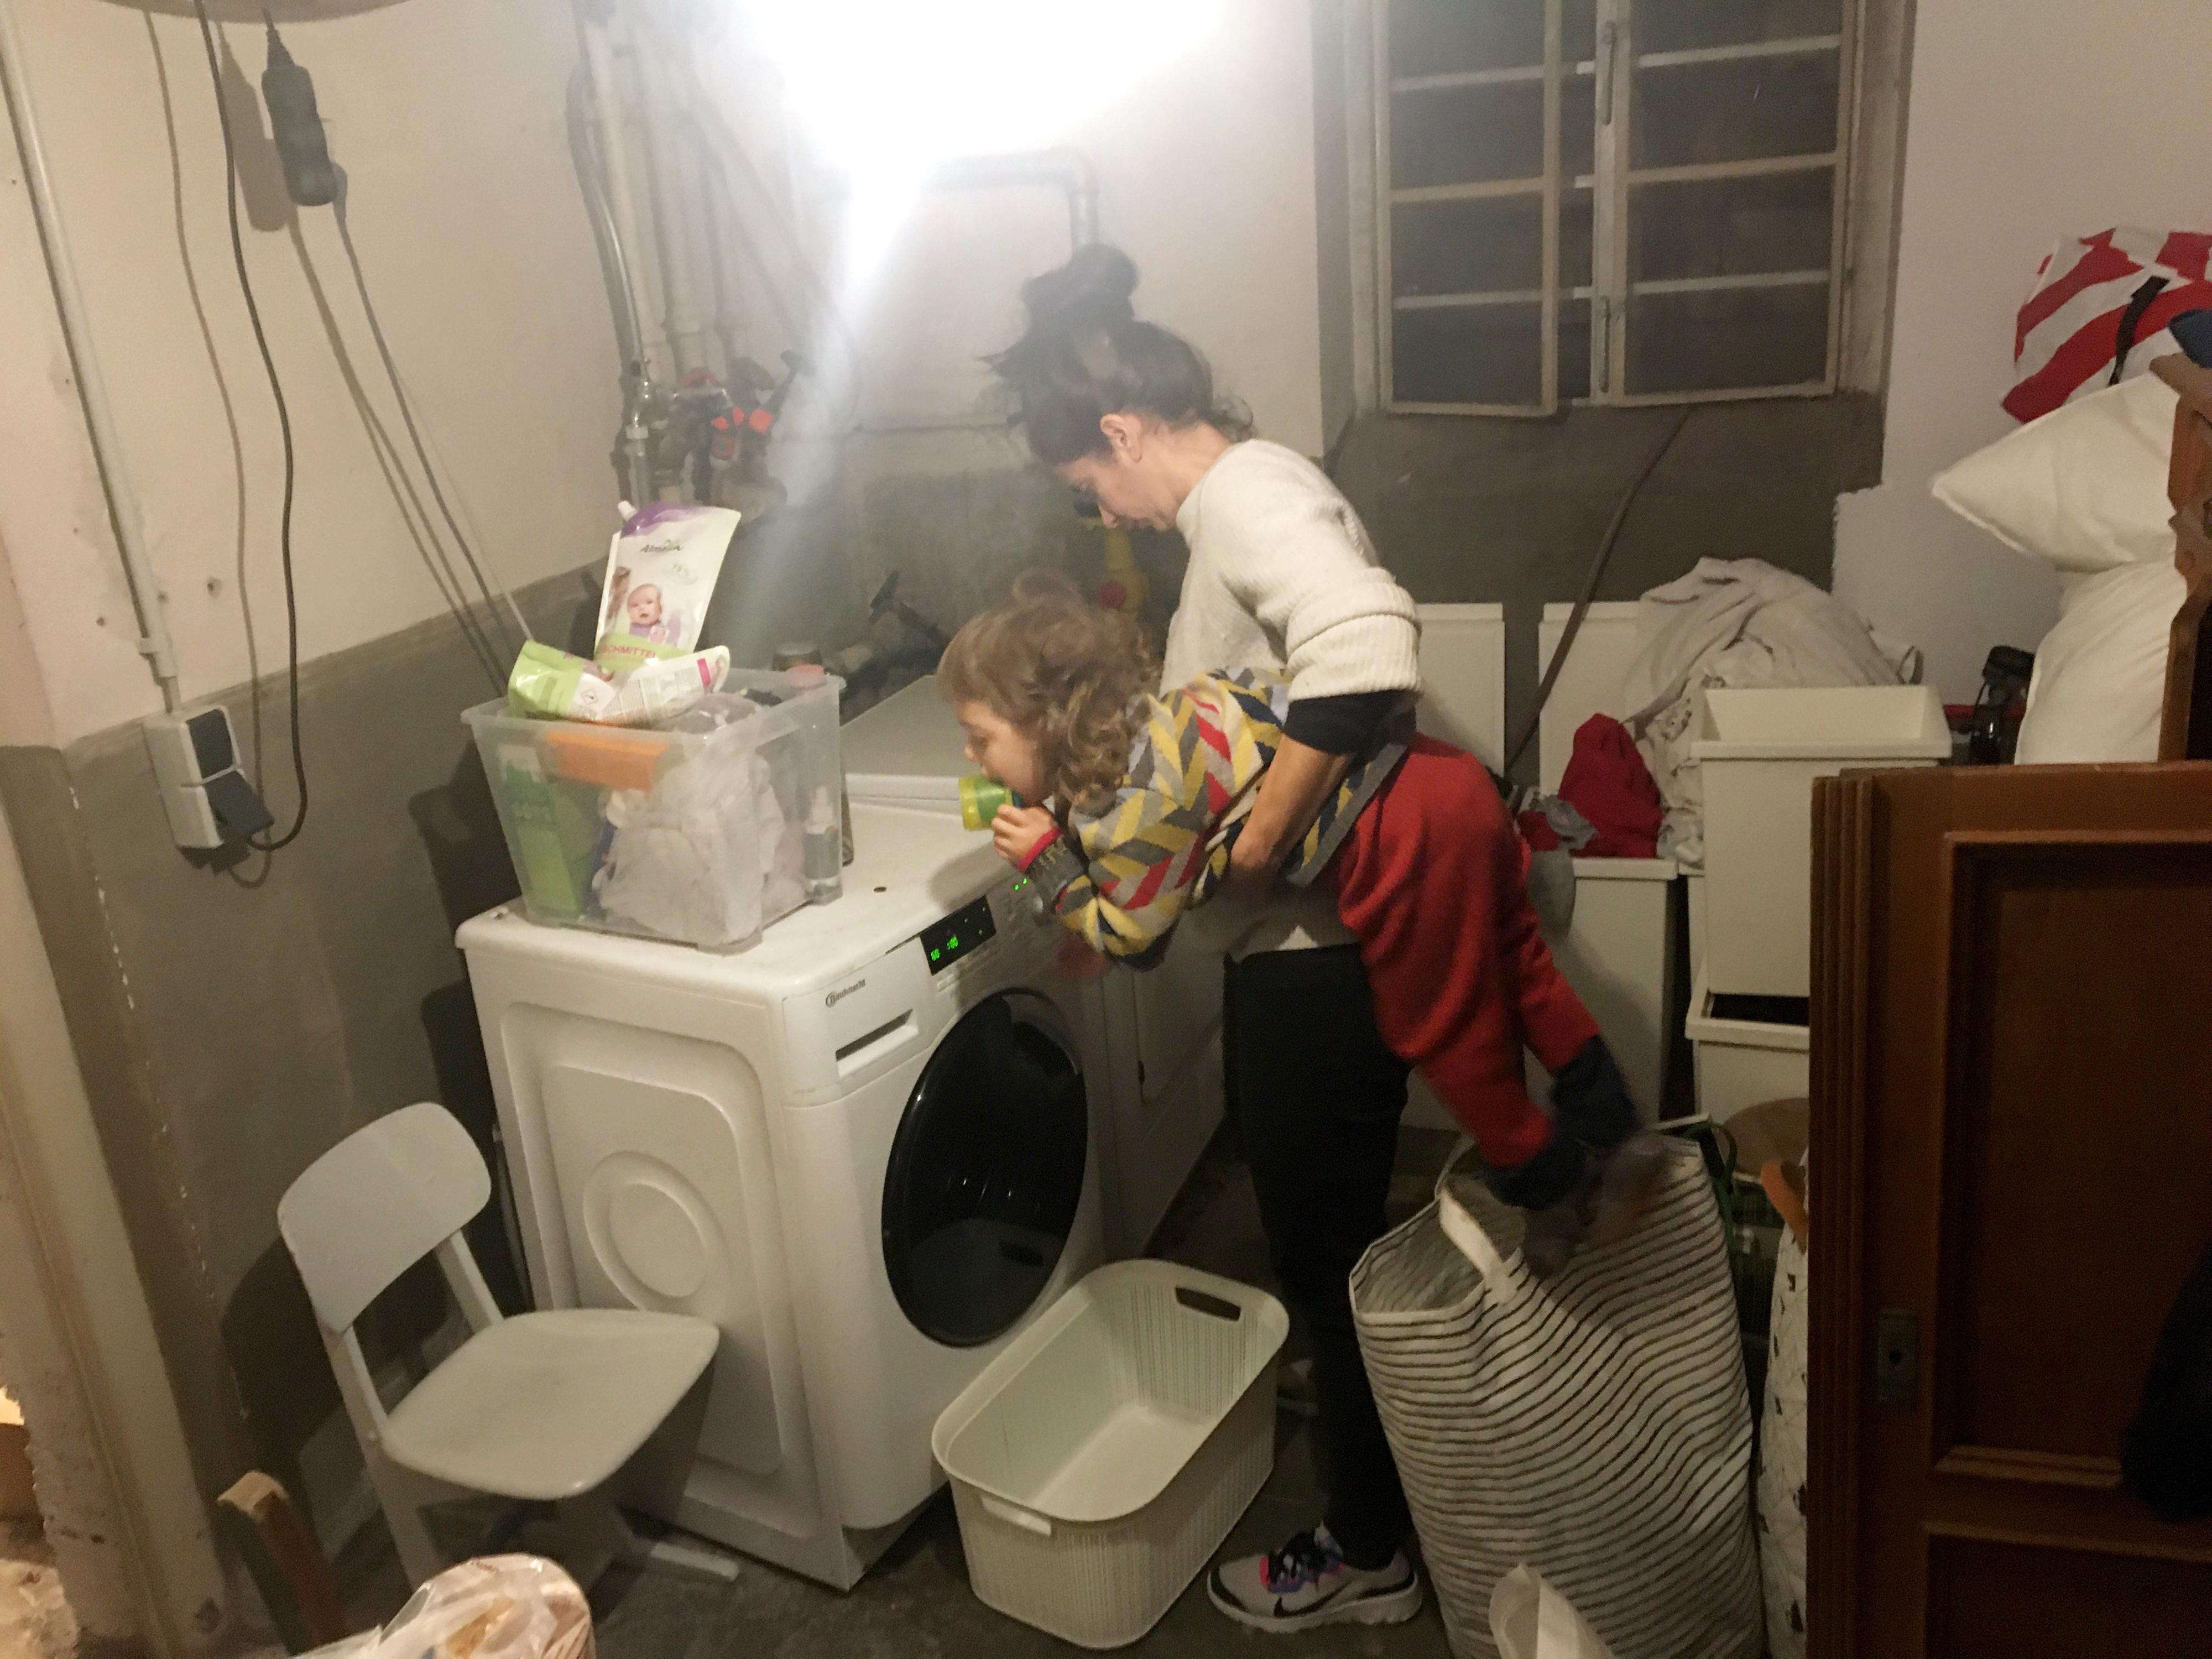 Eine junge Frau steht vor einer Waschmaschine in einem Kellerraum. Sie hat ein Kleinkind unter dem Arm. Im Keller stehen und liegen überall Gegenstände herum.